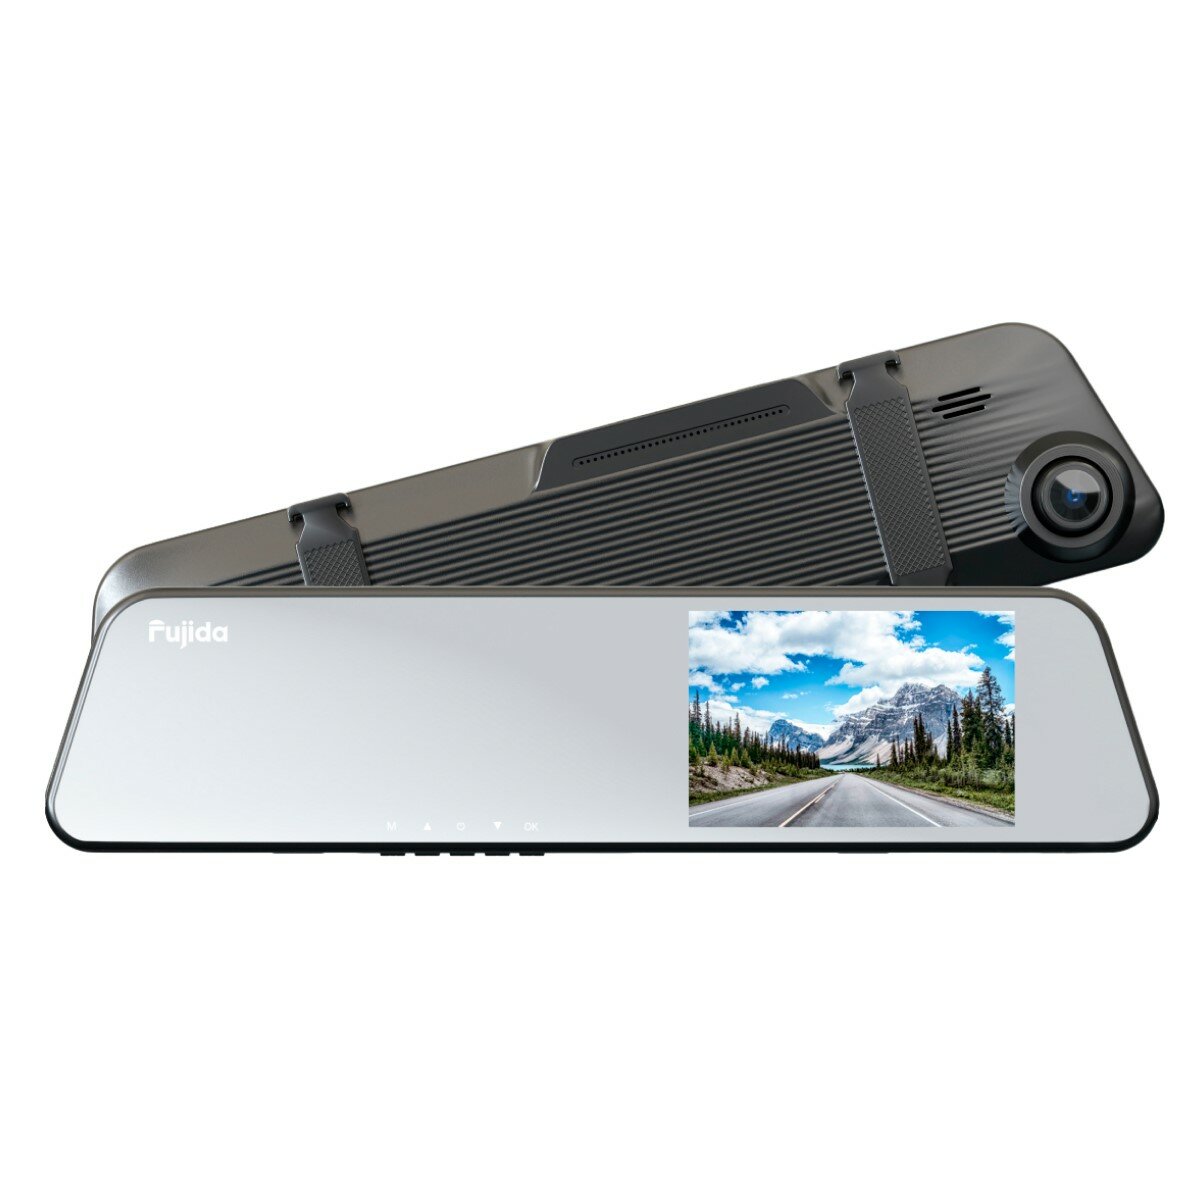 Fujida Zoom Blik - видеорегистратор-зеркало Full HD с функцией парковки